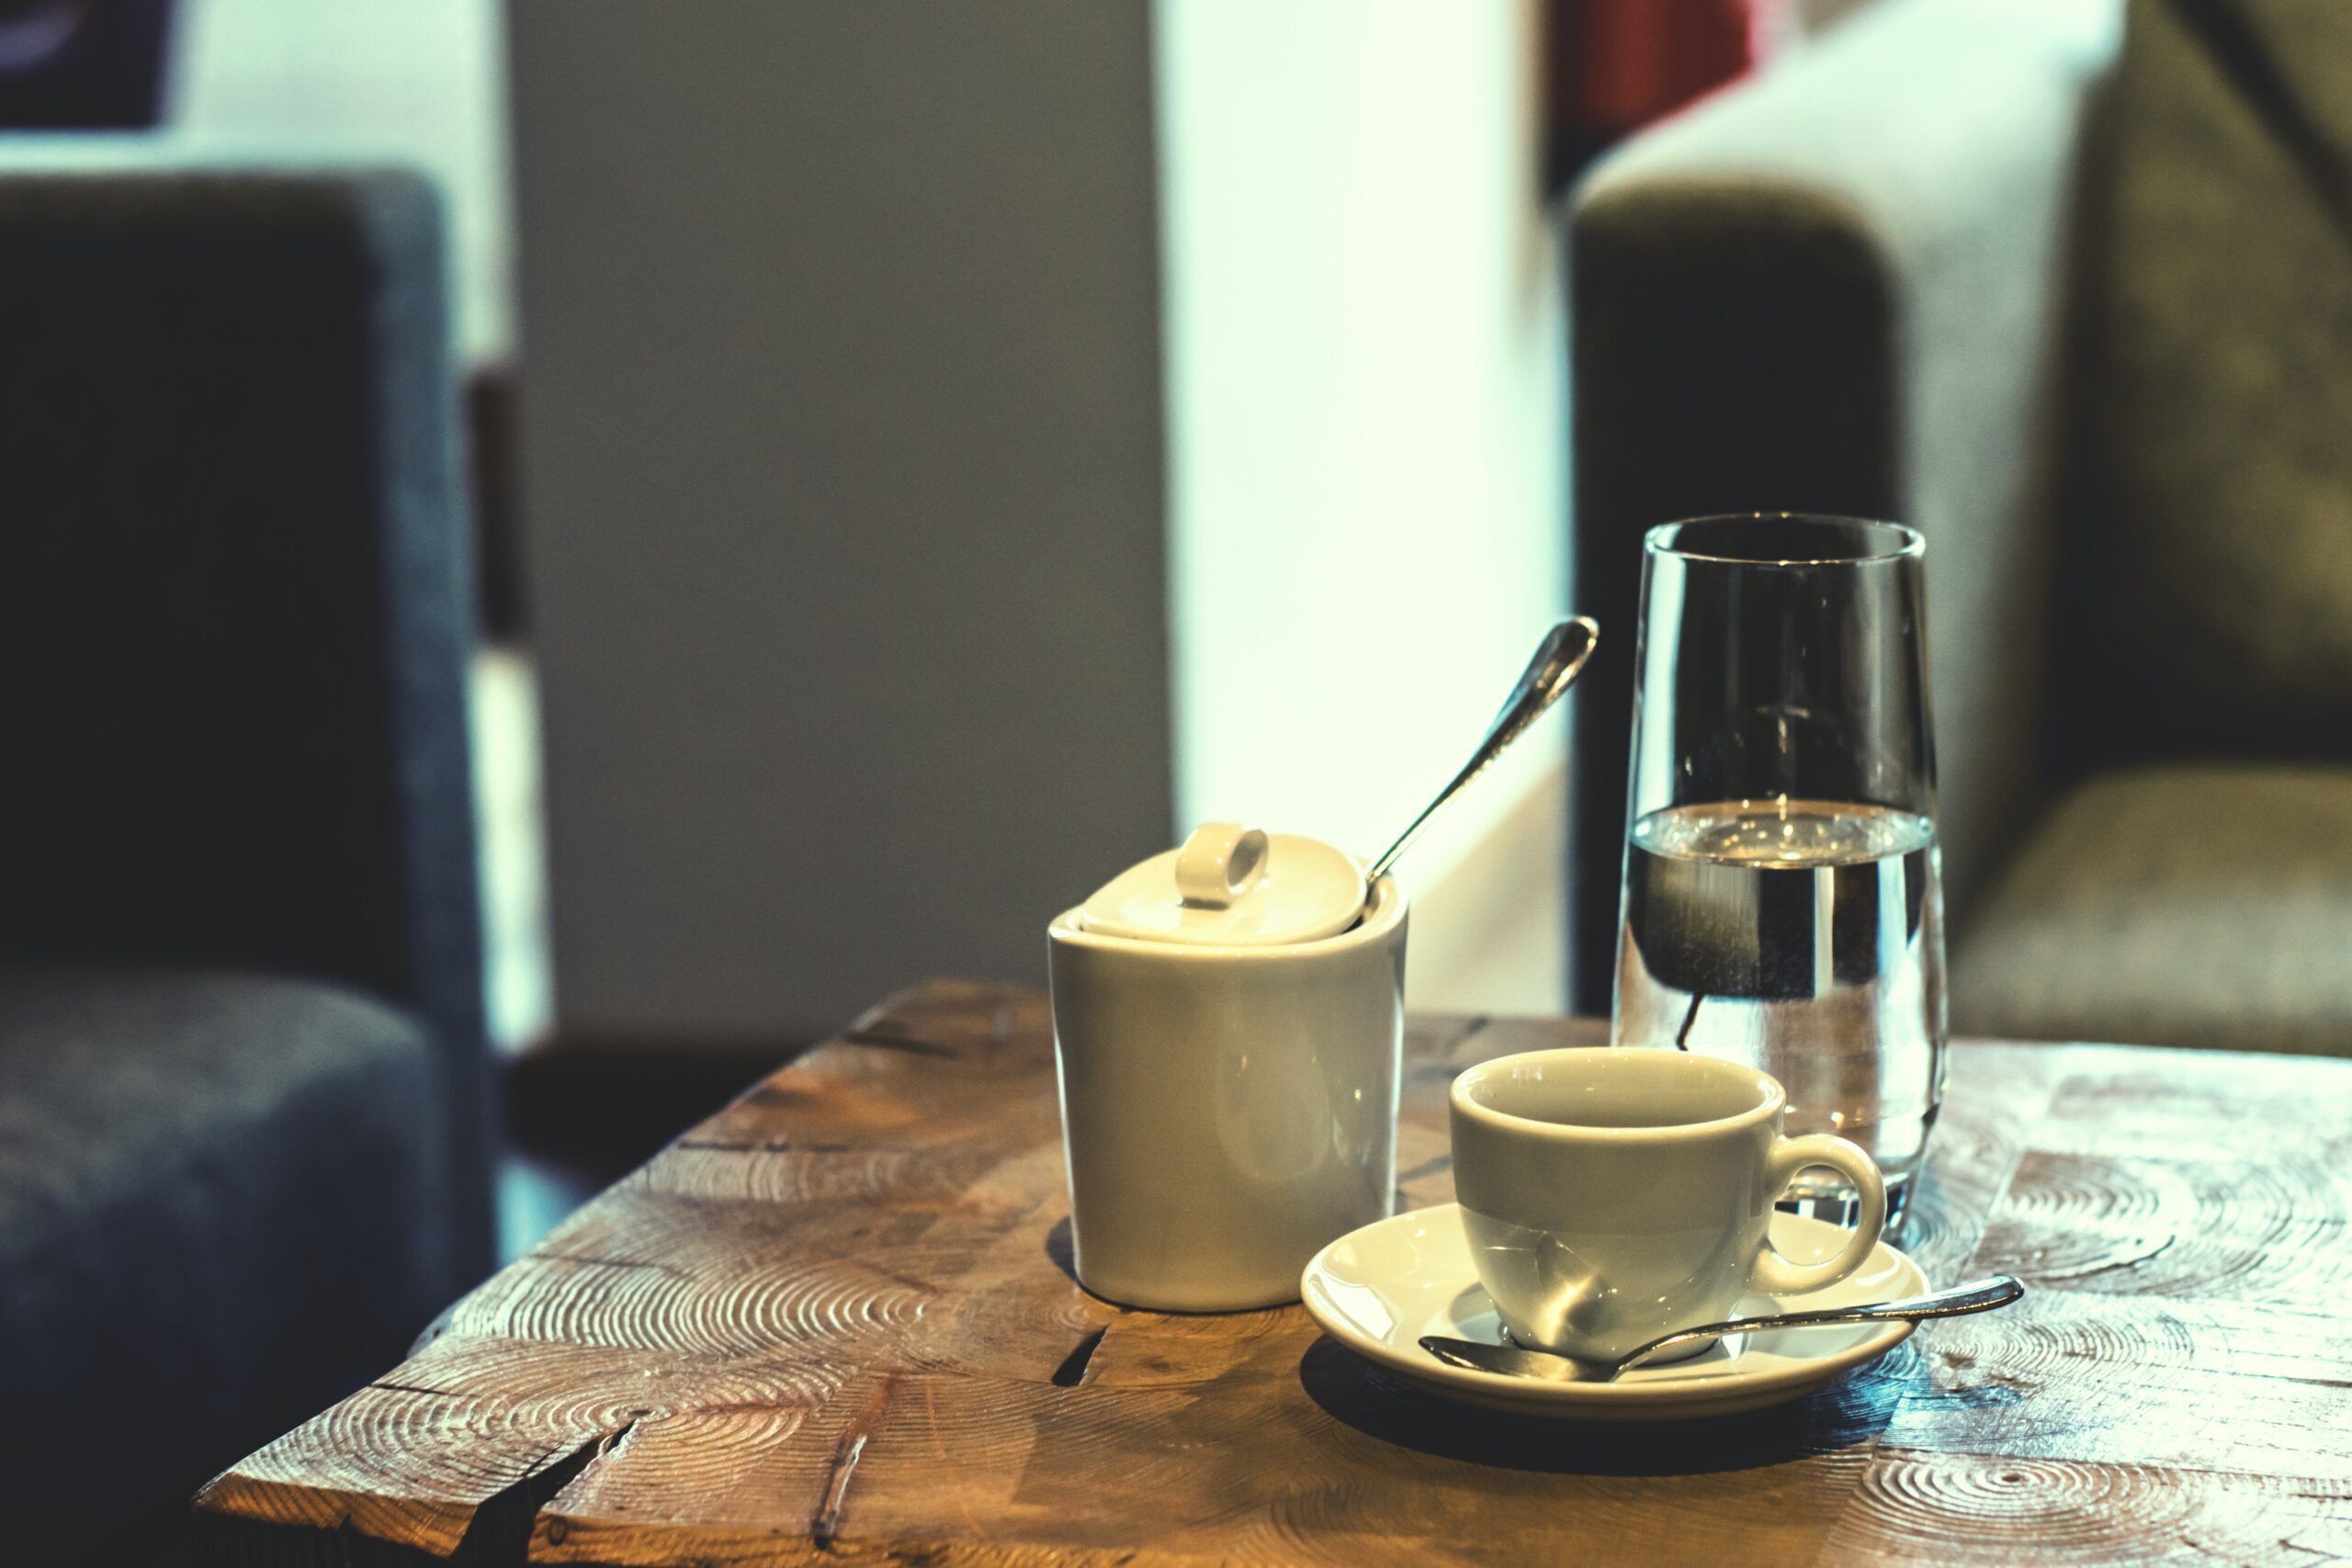 INTERESANTNO Saznajte zašto se uz kafu servira i čaša vode